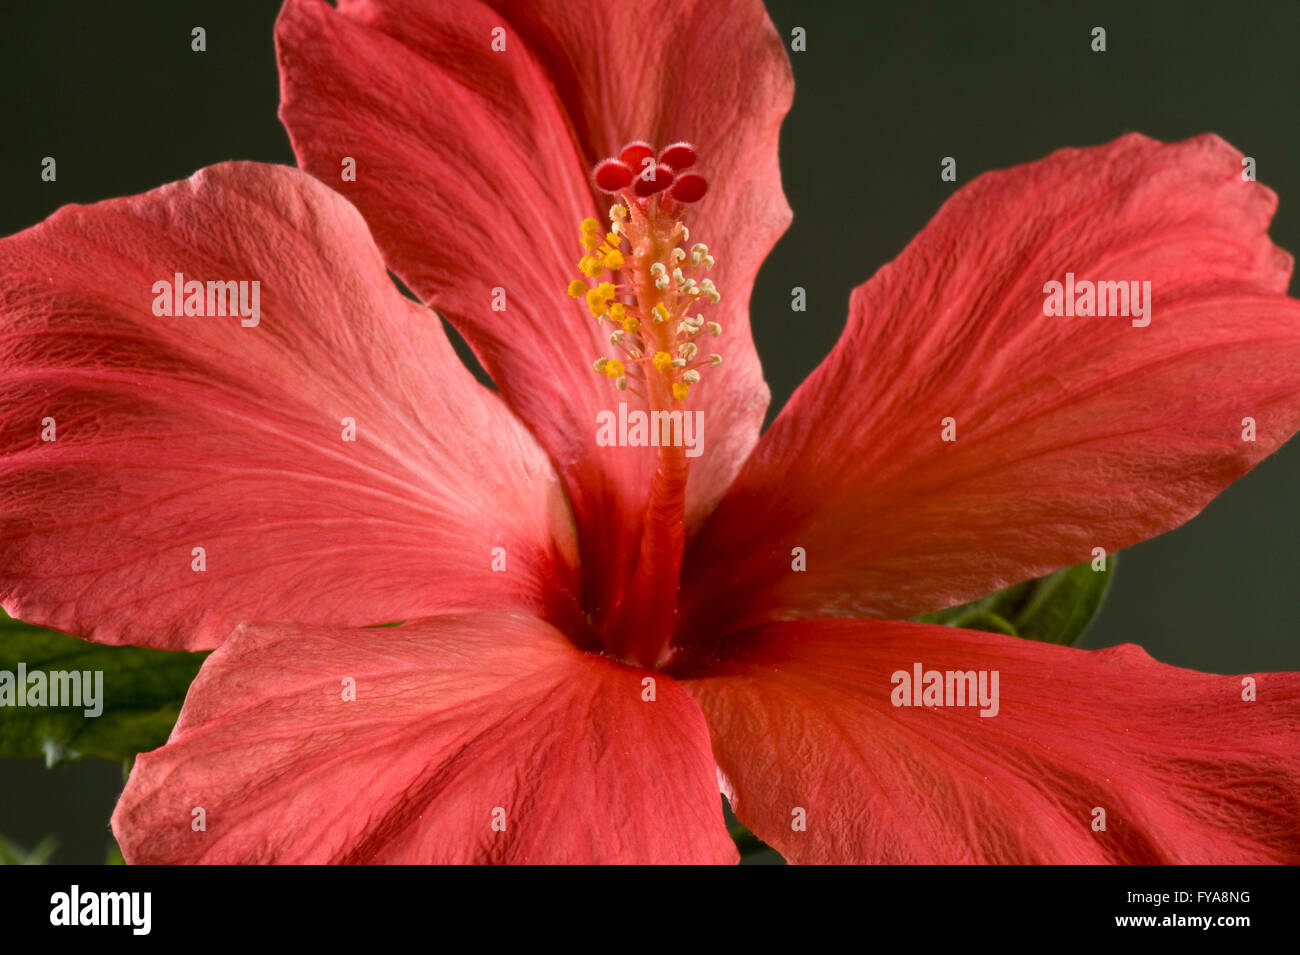 Rote Blume eine Zimmerpflanze Hibiskus, Hibiscus Rosa-Sinensis, zeigt Stigma und Staubbeutel Stockfoto